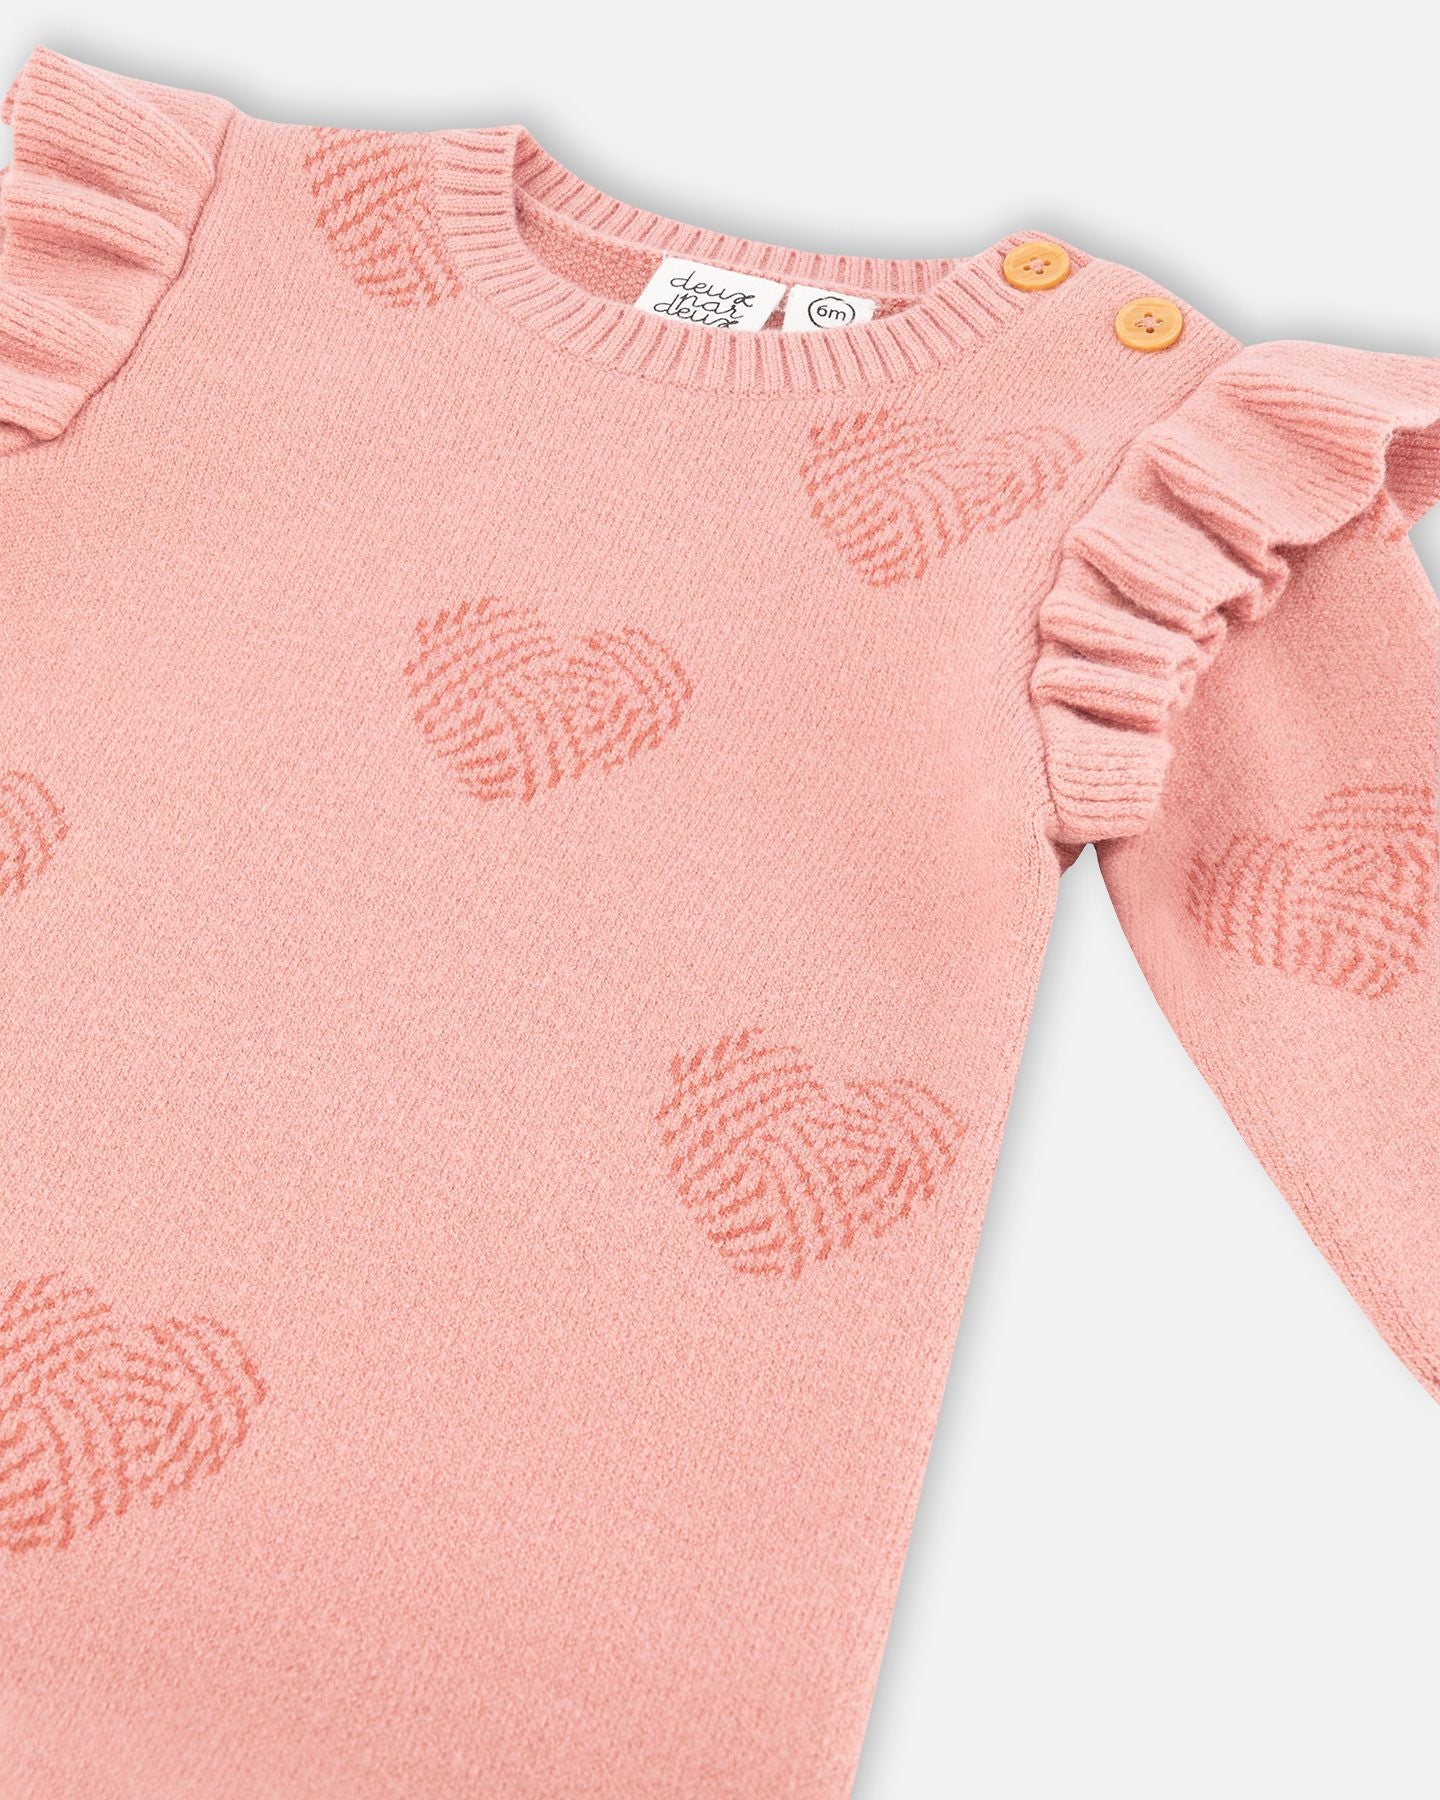 Boutique Petites Fleurs - Jumpsuit pour bébé Coeur F20BT41 - Deux par Deux